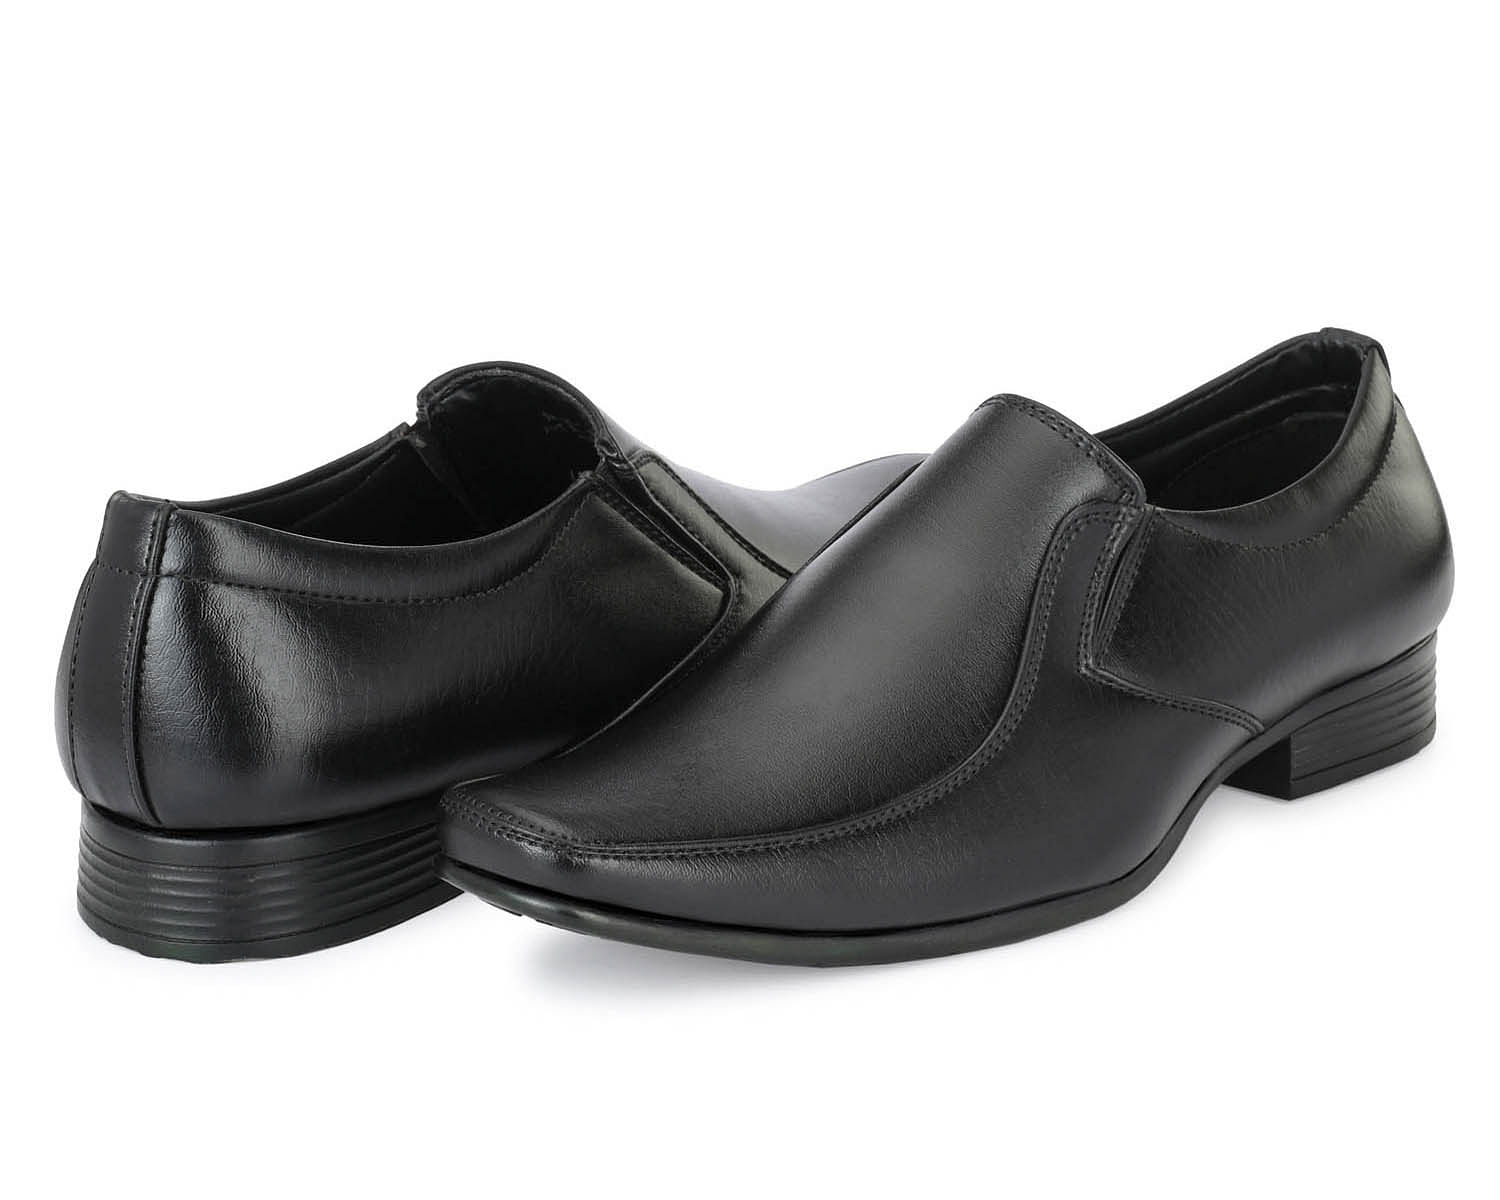 Pair-it Men moccasin Formal Shoes - MN-RYDER217-Black